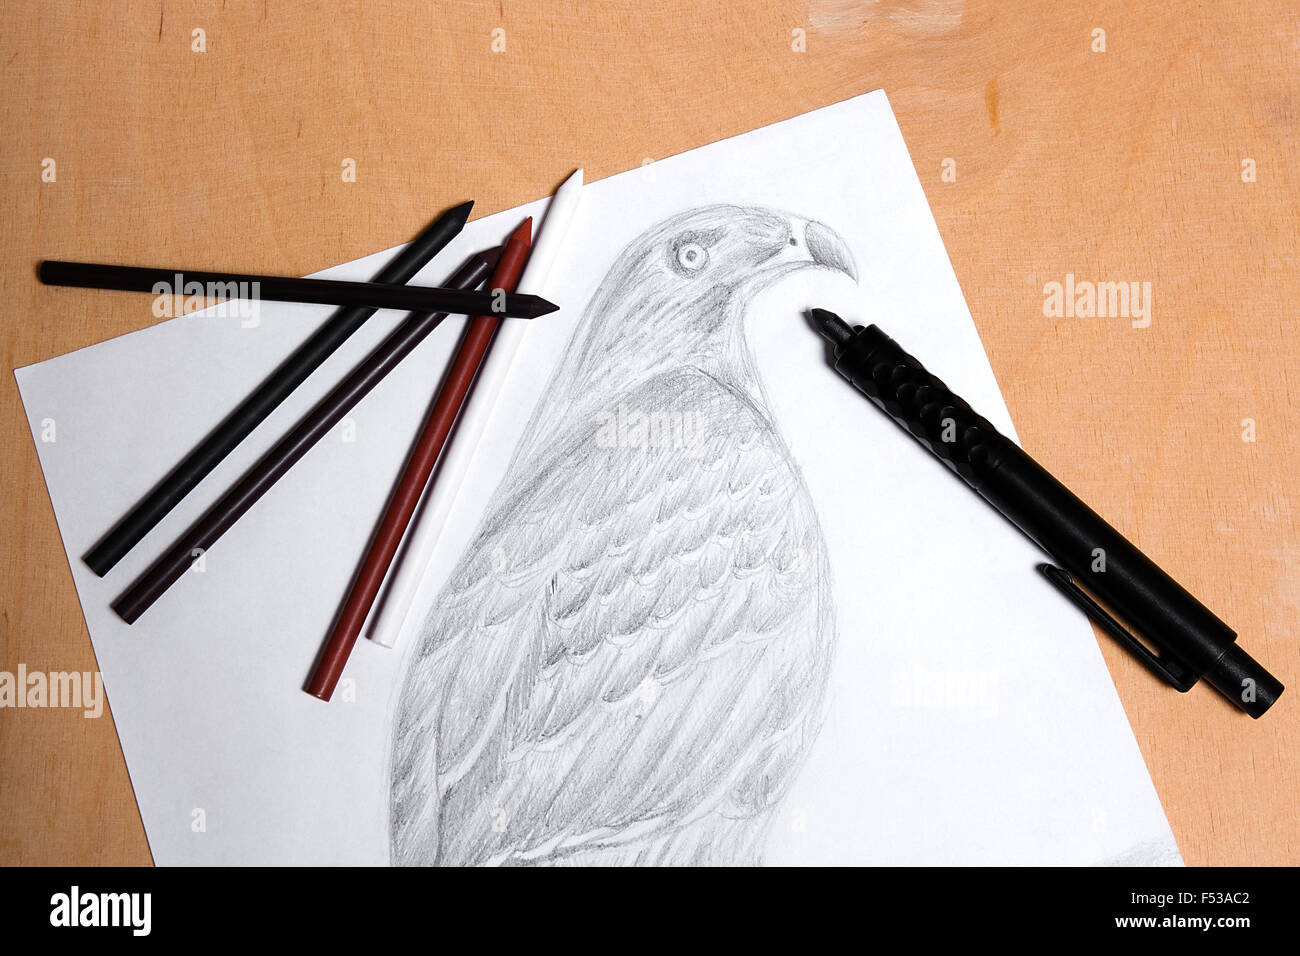 Dessin au crayon d'embrayage avec faucon sur le fond en bois. Crayon d'embrayage et différents types de matériaux d'art : la sanguine, mine de plomb Banque D'Images